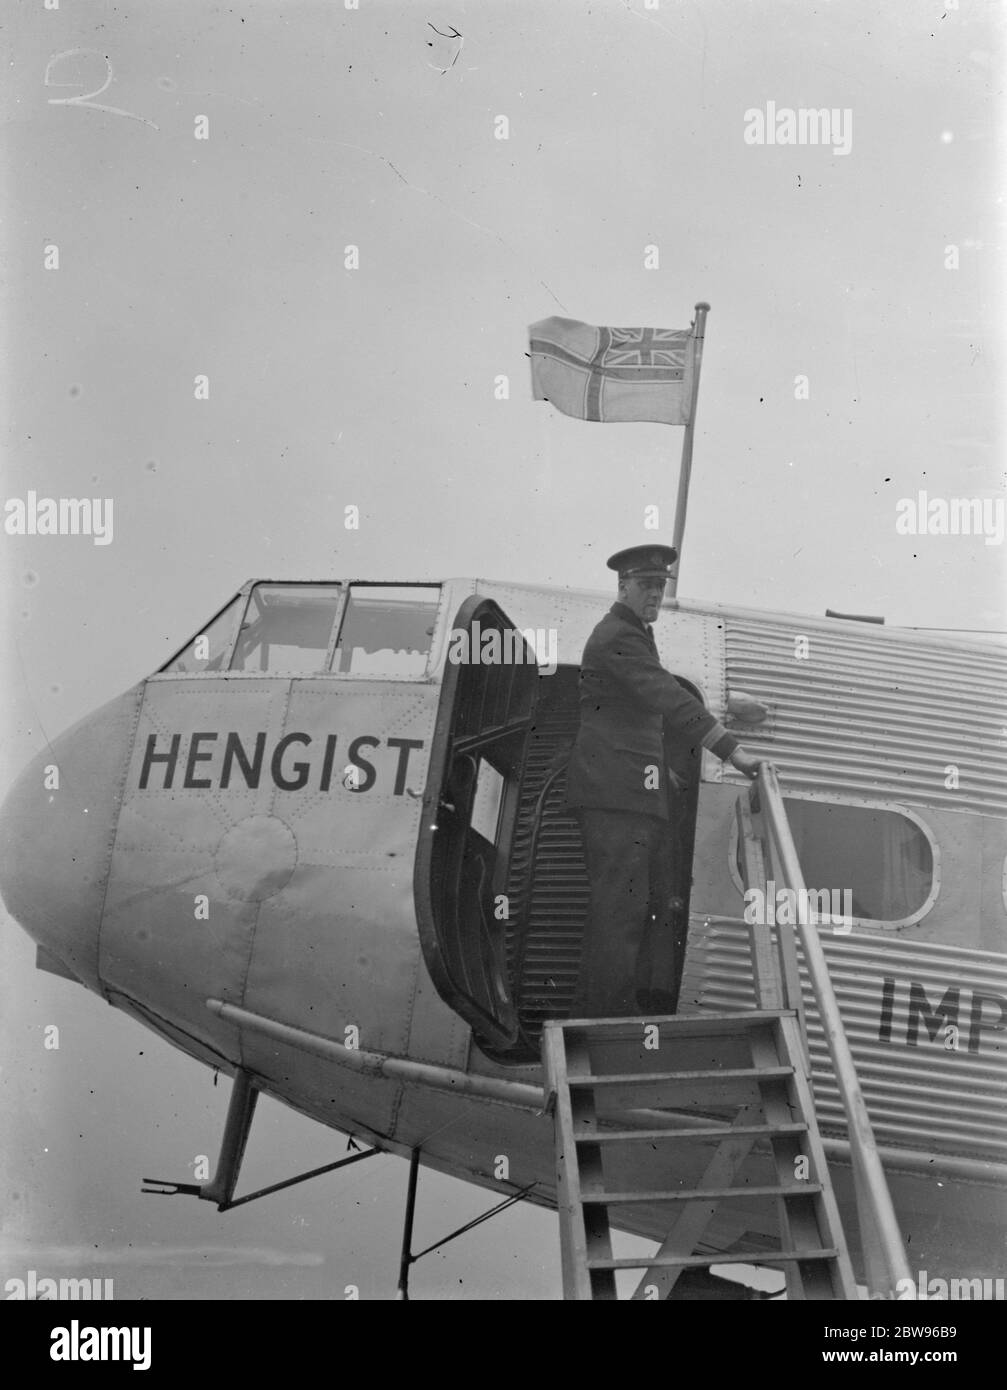 Neue Flagge der britischen Zivilluftfahrt wurde in Croydon gehisst. Die neue britische Zivilluftfahrt-Flagge, bestehend aus dem Kreuz von St. George, mit der Union Jack in der Kornr wird auf einem kaiserlichen Flugzeug gehisst, am Croydon Aerodrome, London, bevor sie für Aintree, Liverpool Beförderung von Passagieren, um den Grand National zu sehen. 18 März 1932 Stockfoto